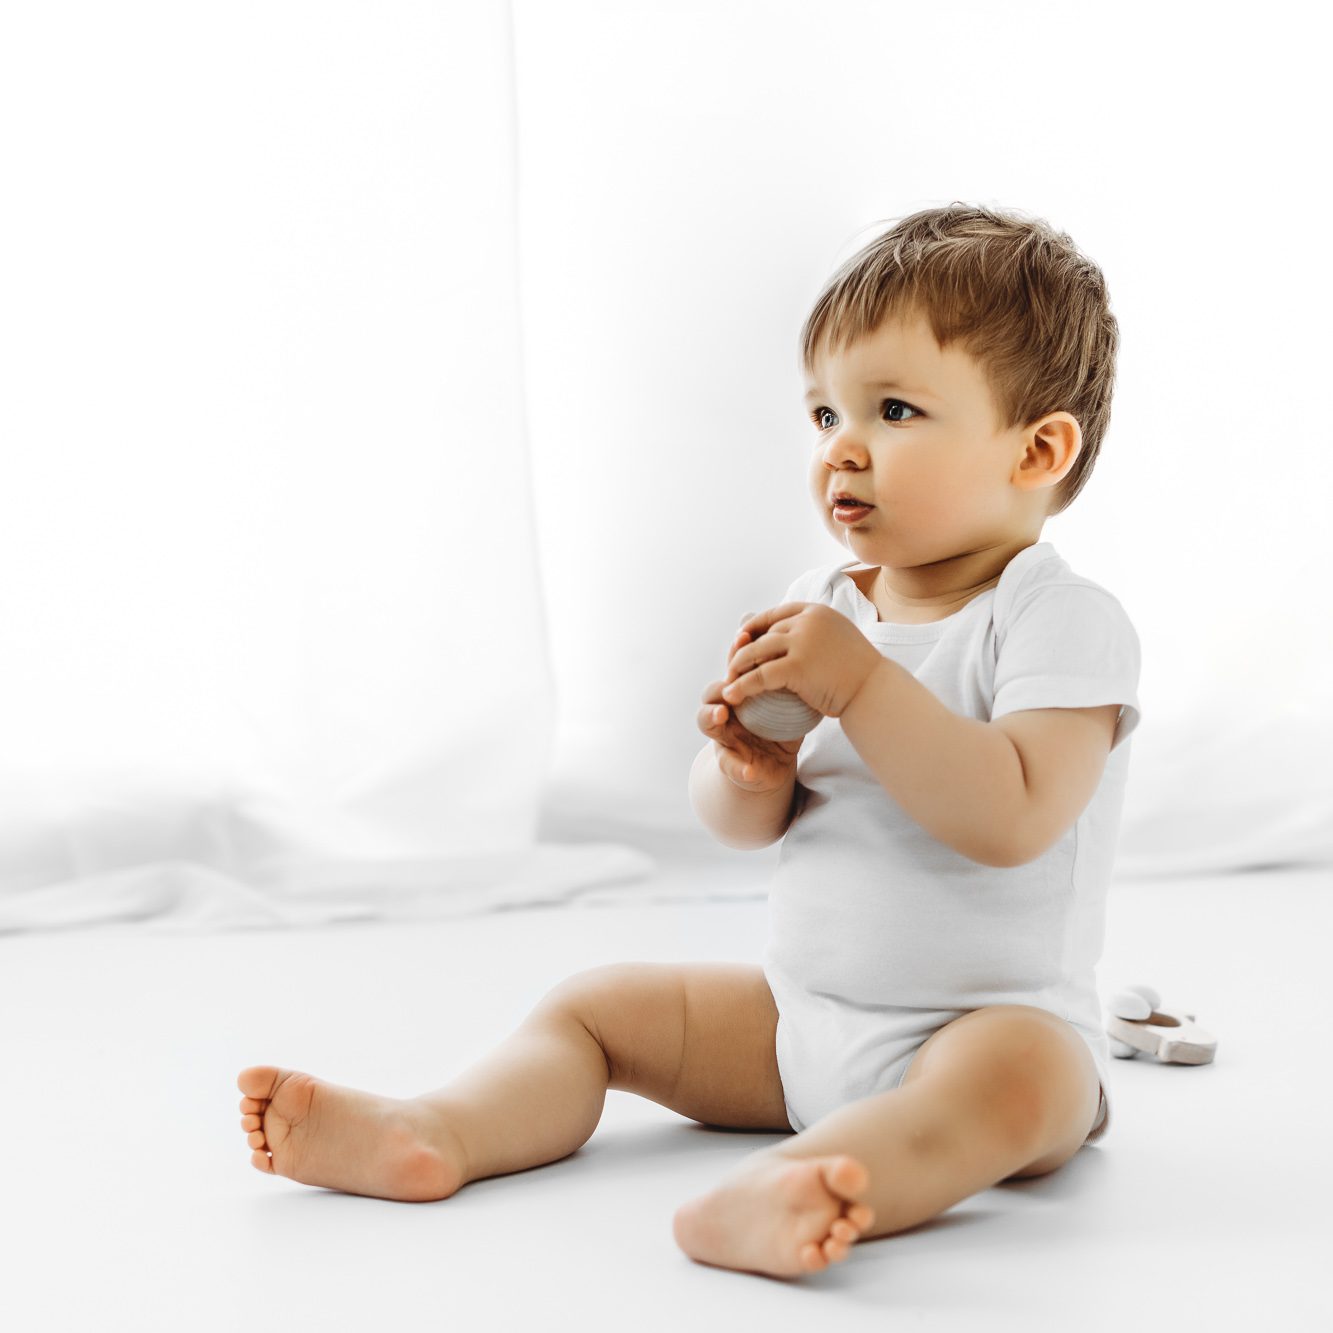 Baby Junge mit einem Holzspielzeug in der Hand im Fotostudio mit einem weißen Body sitzend